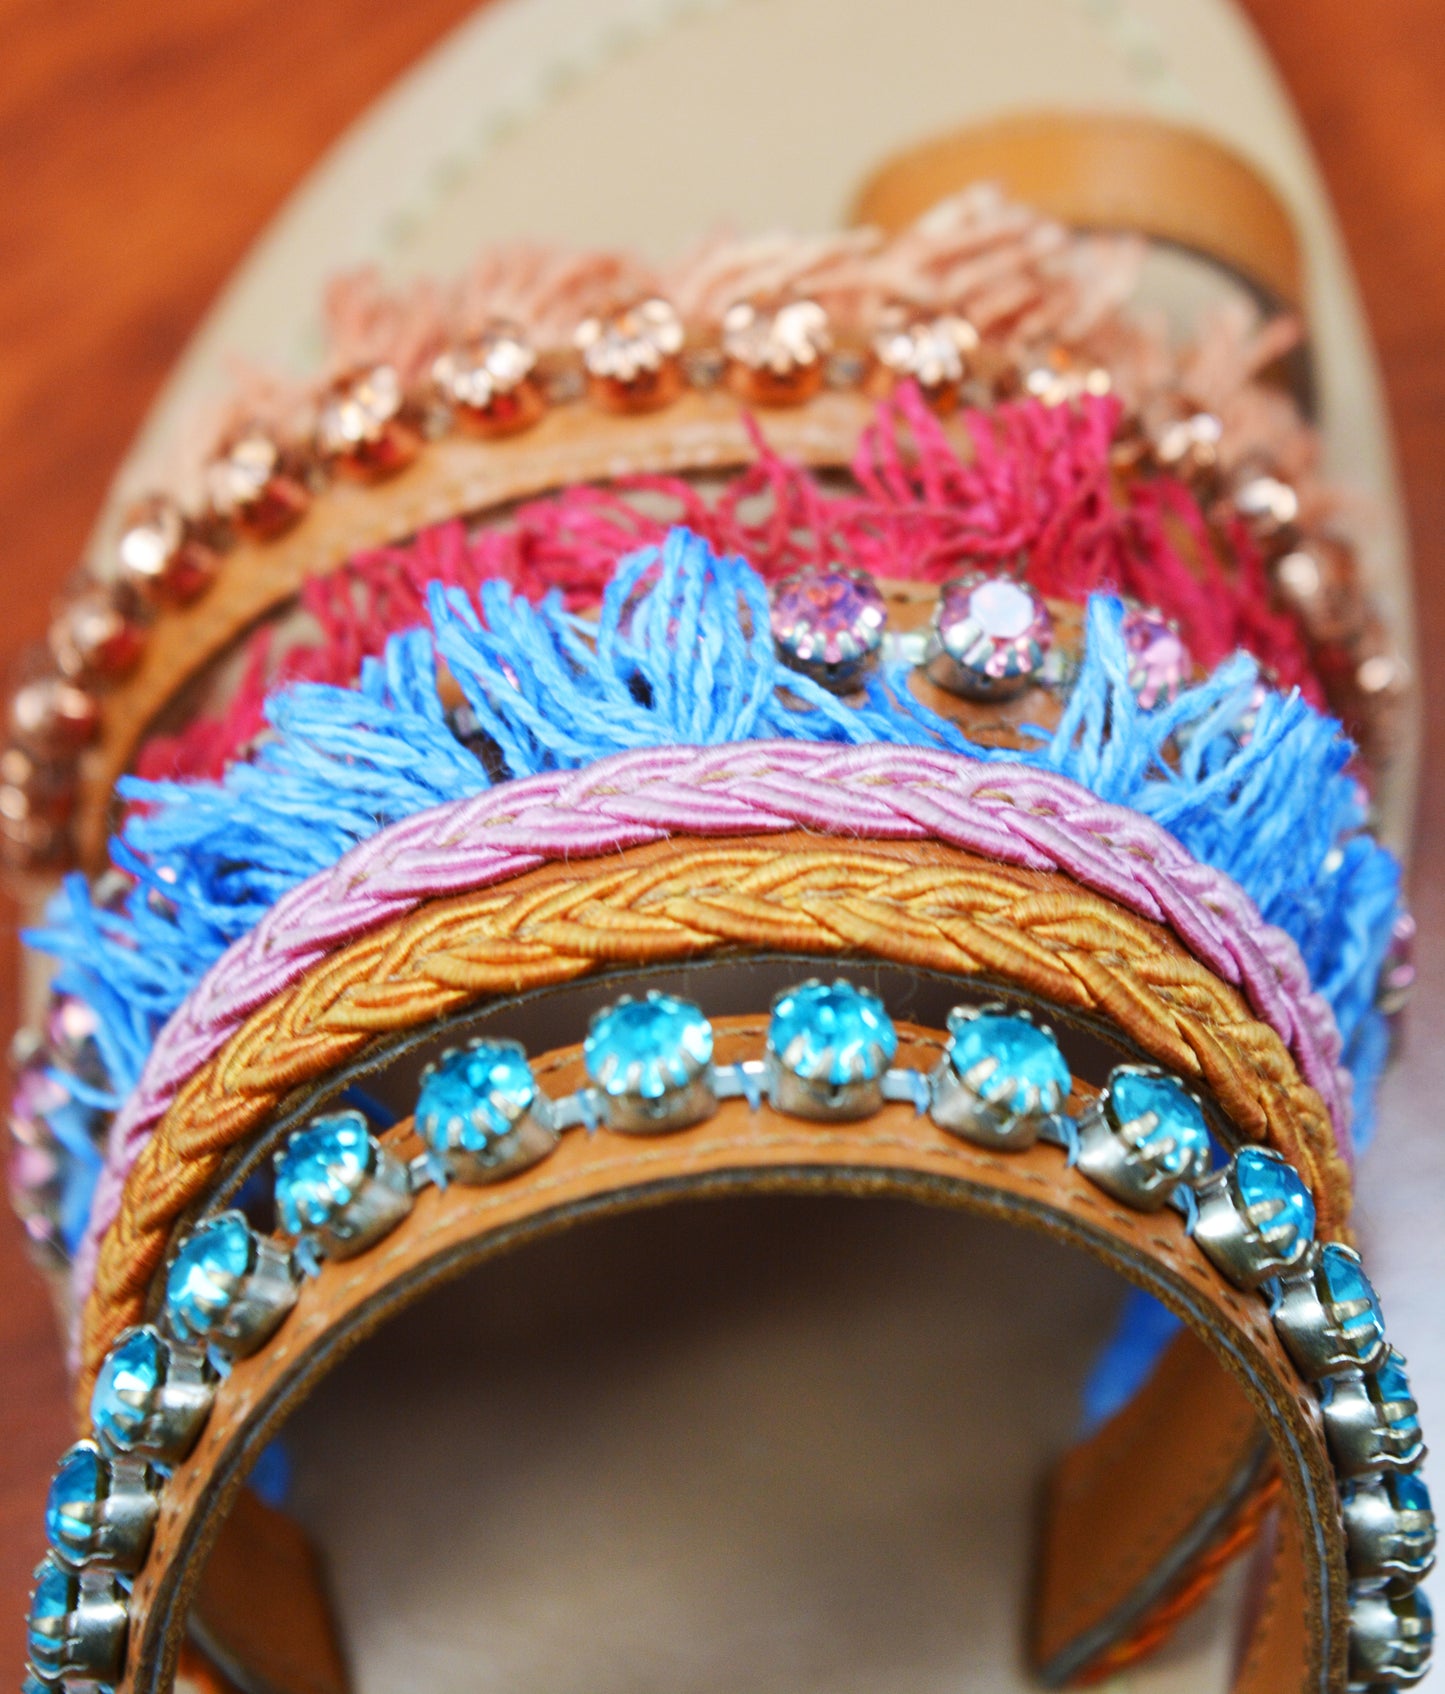 Ornate Tasselled sandals